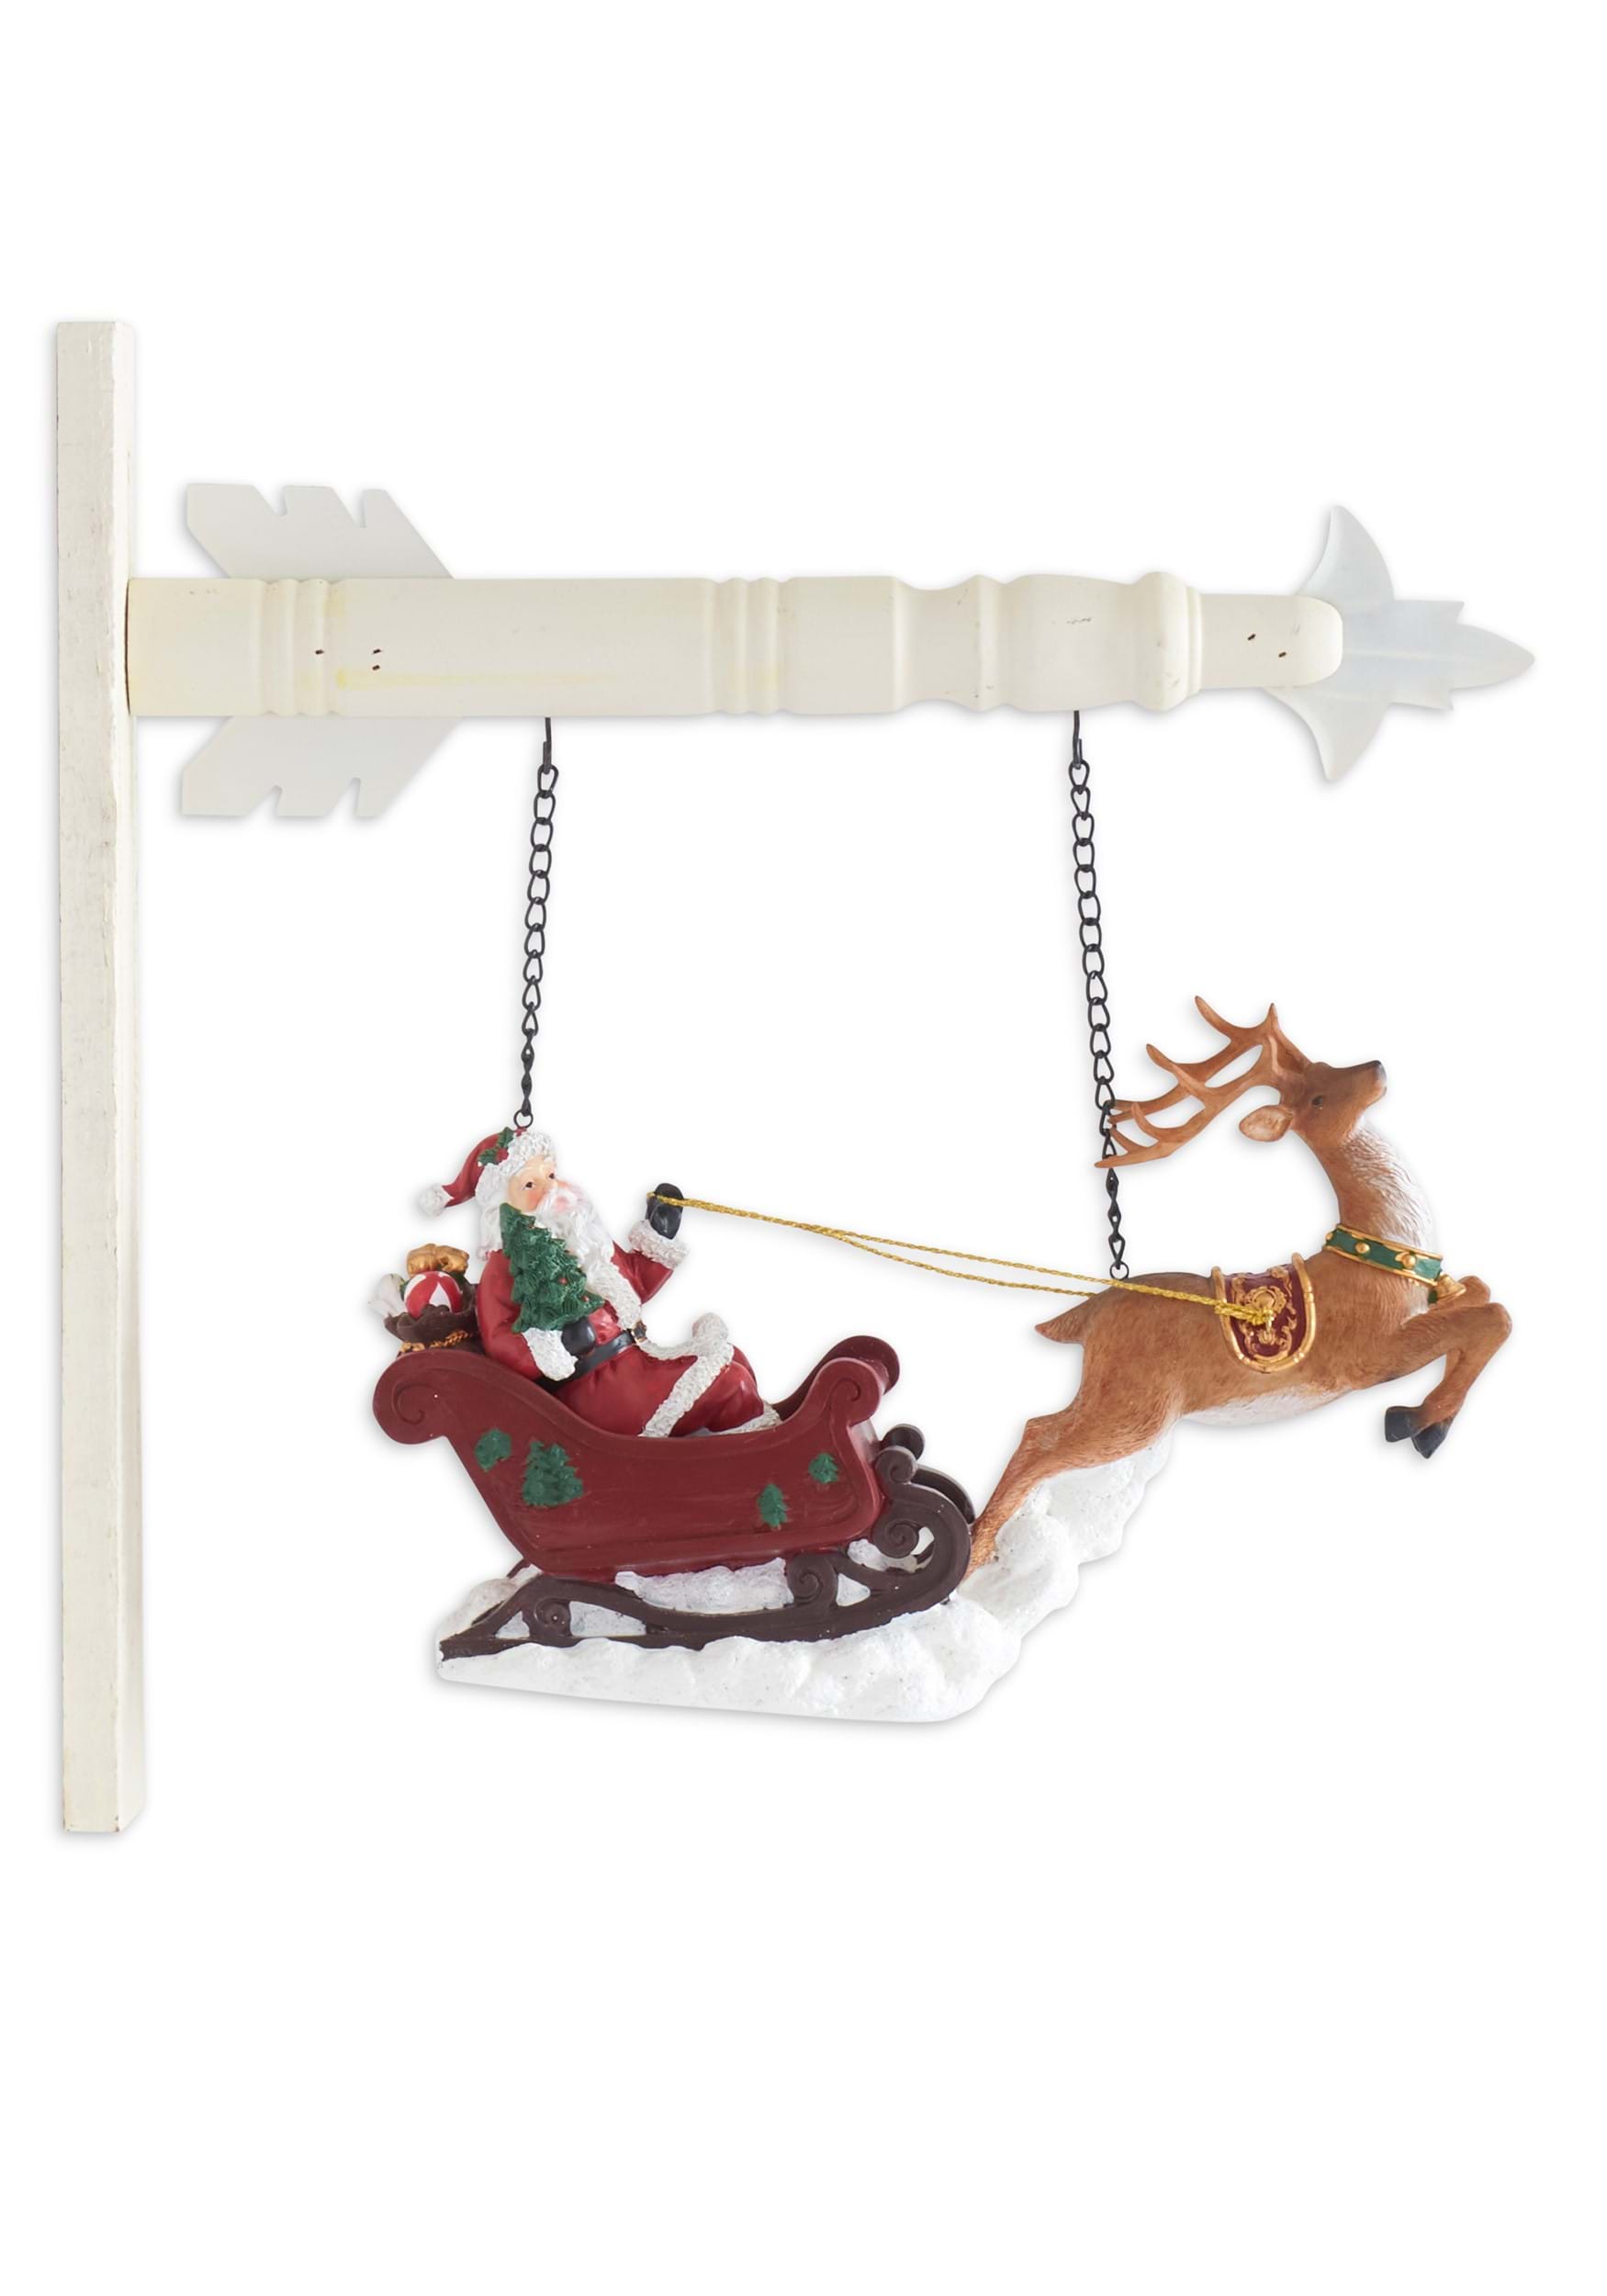 8″ Santa Riding Sleigh with Reindeer Arrow Figure